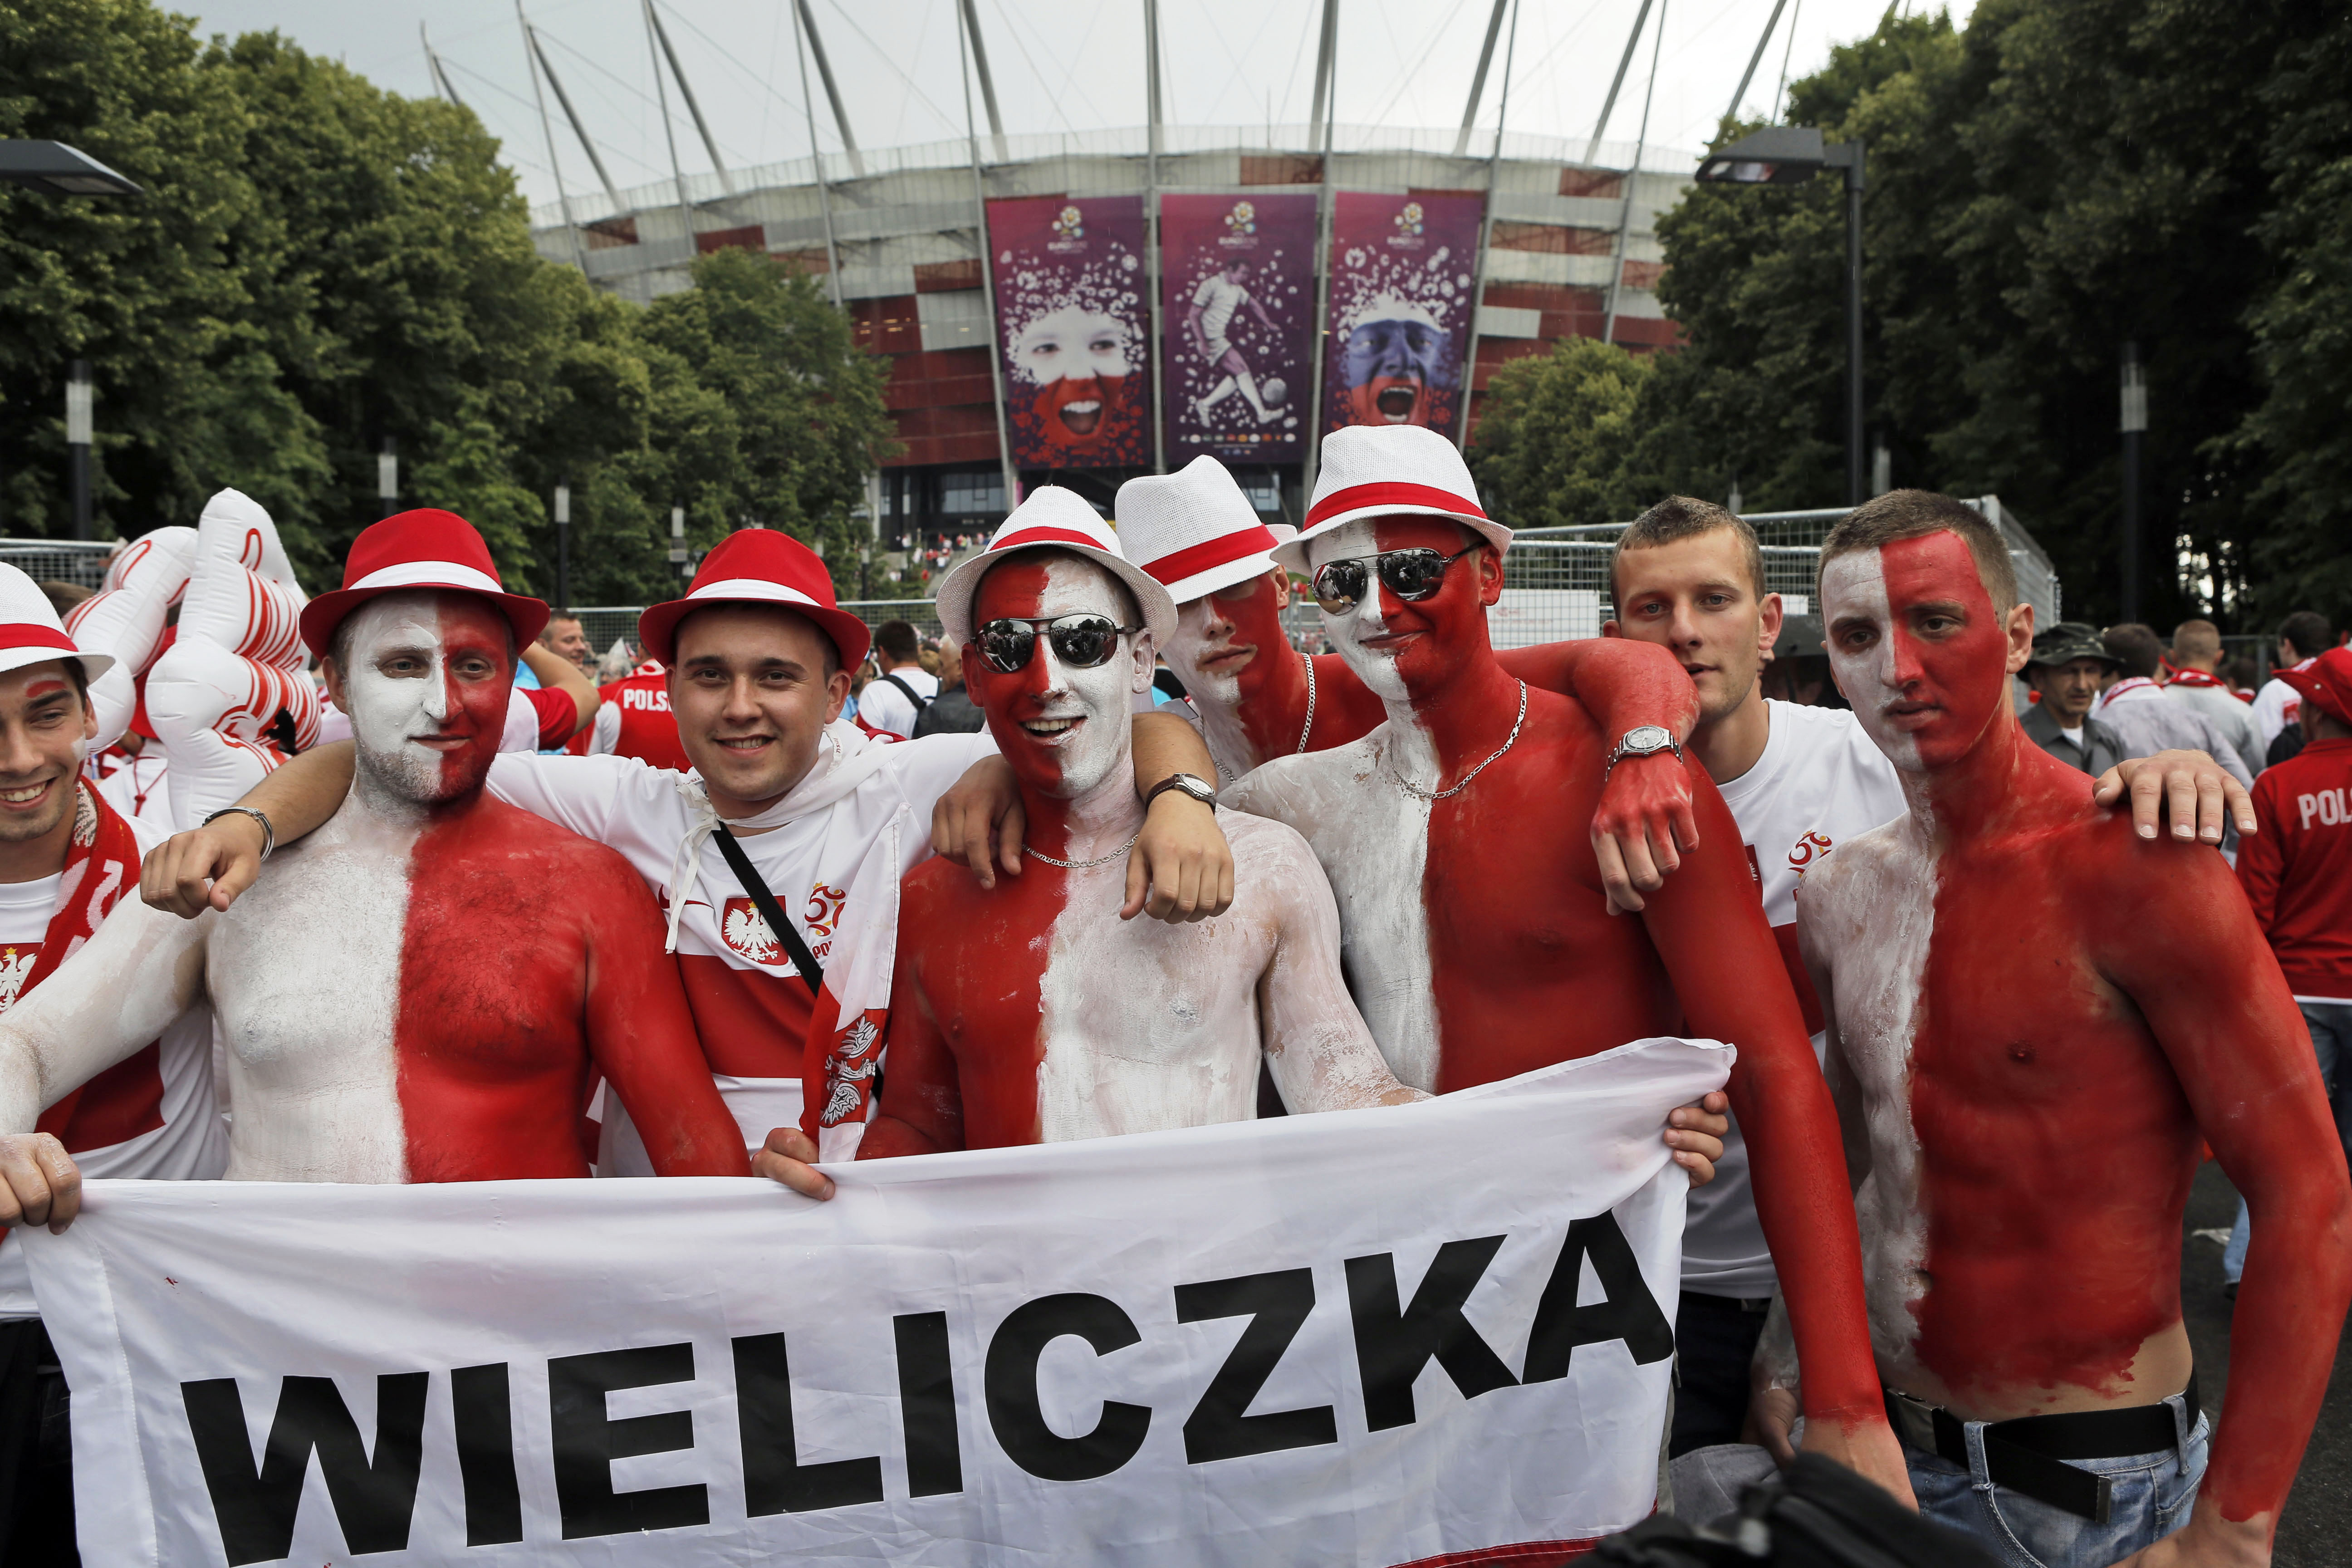 De polska fansen EM-laddar utanför Naradowy-stadion